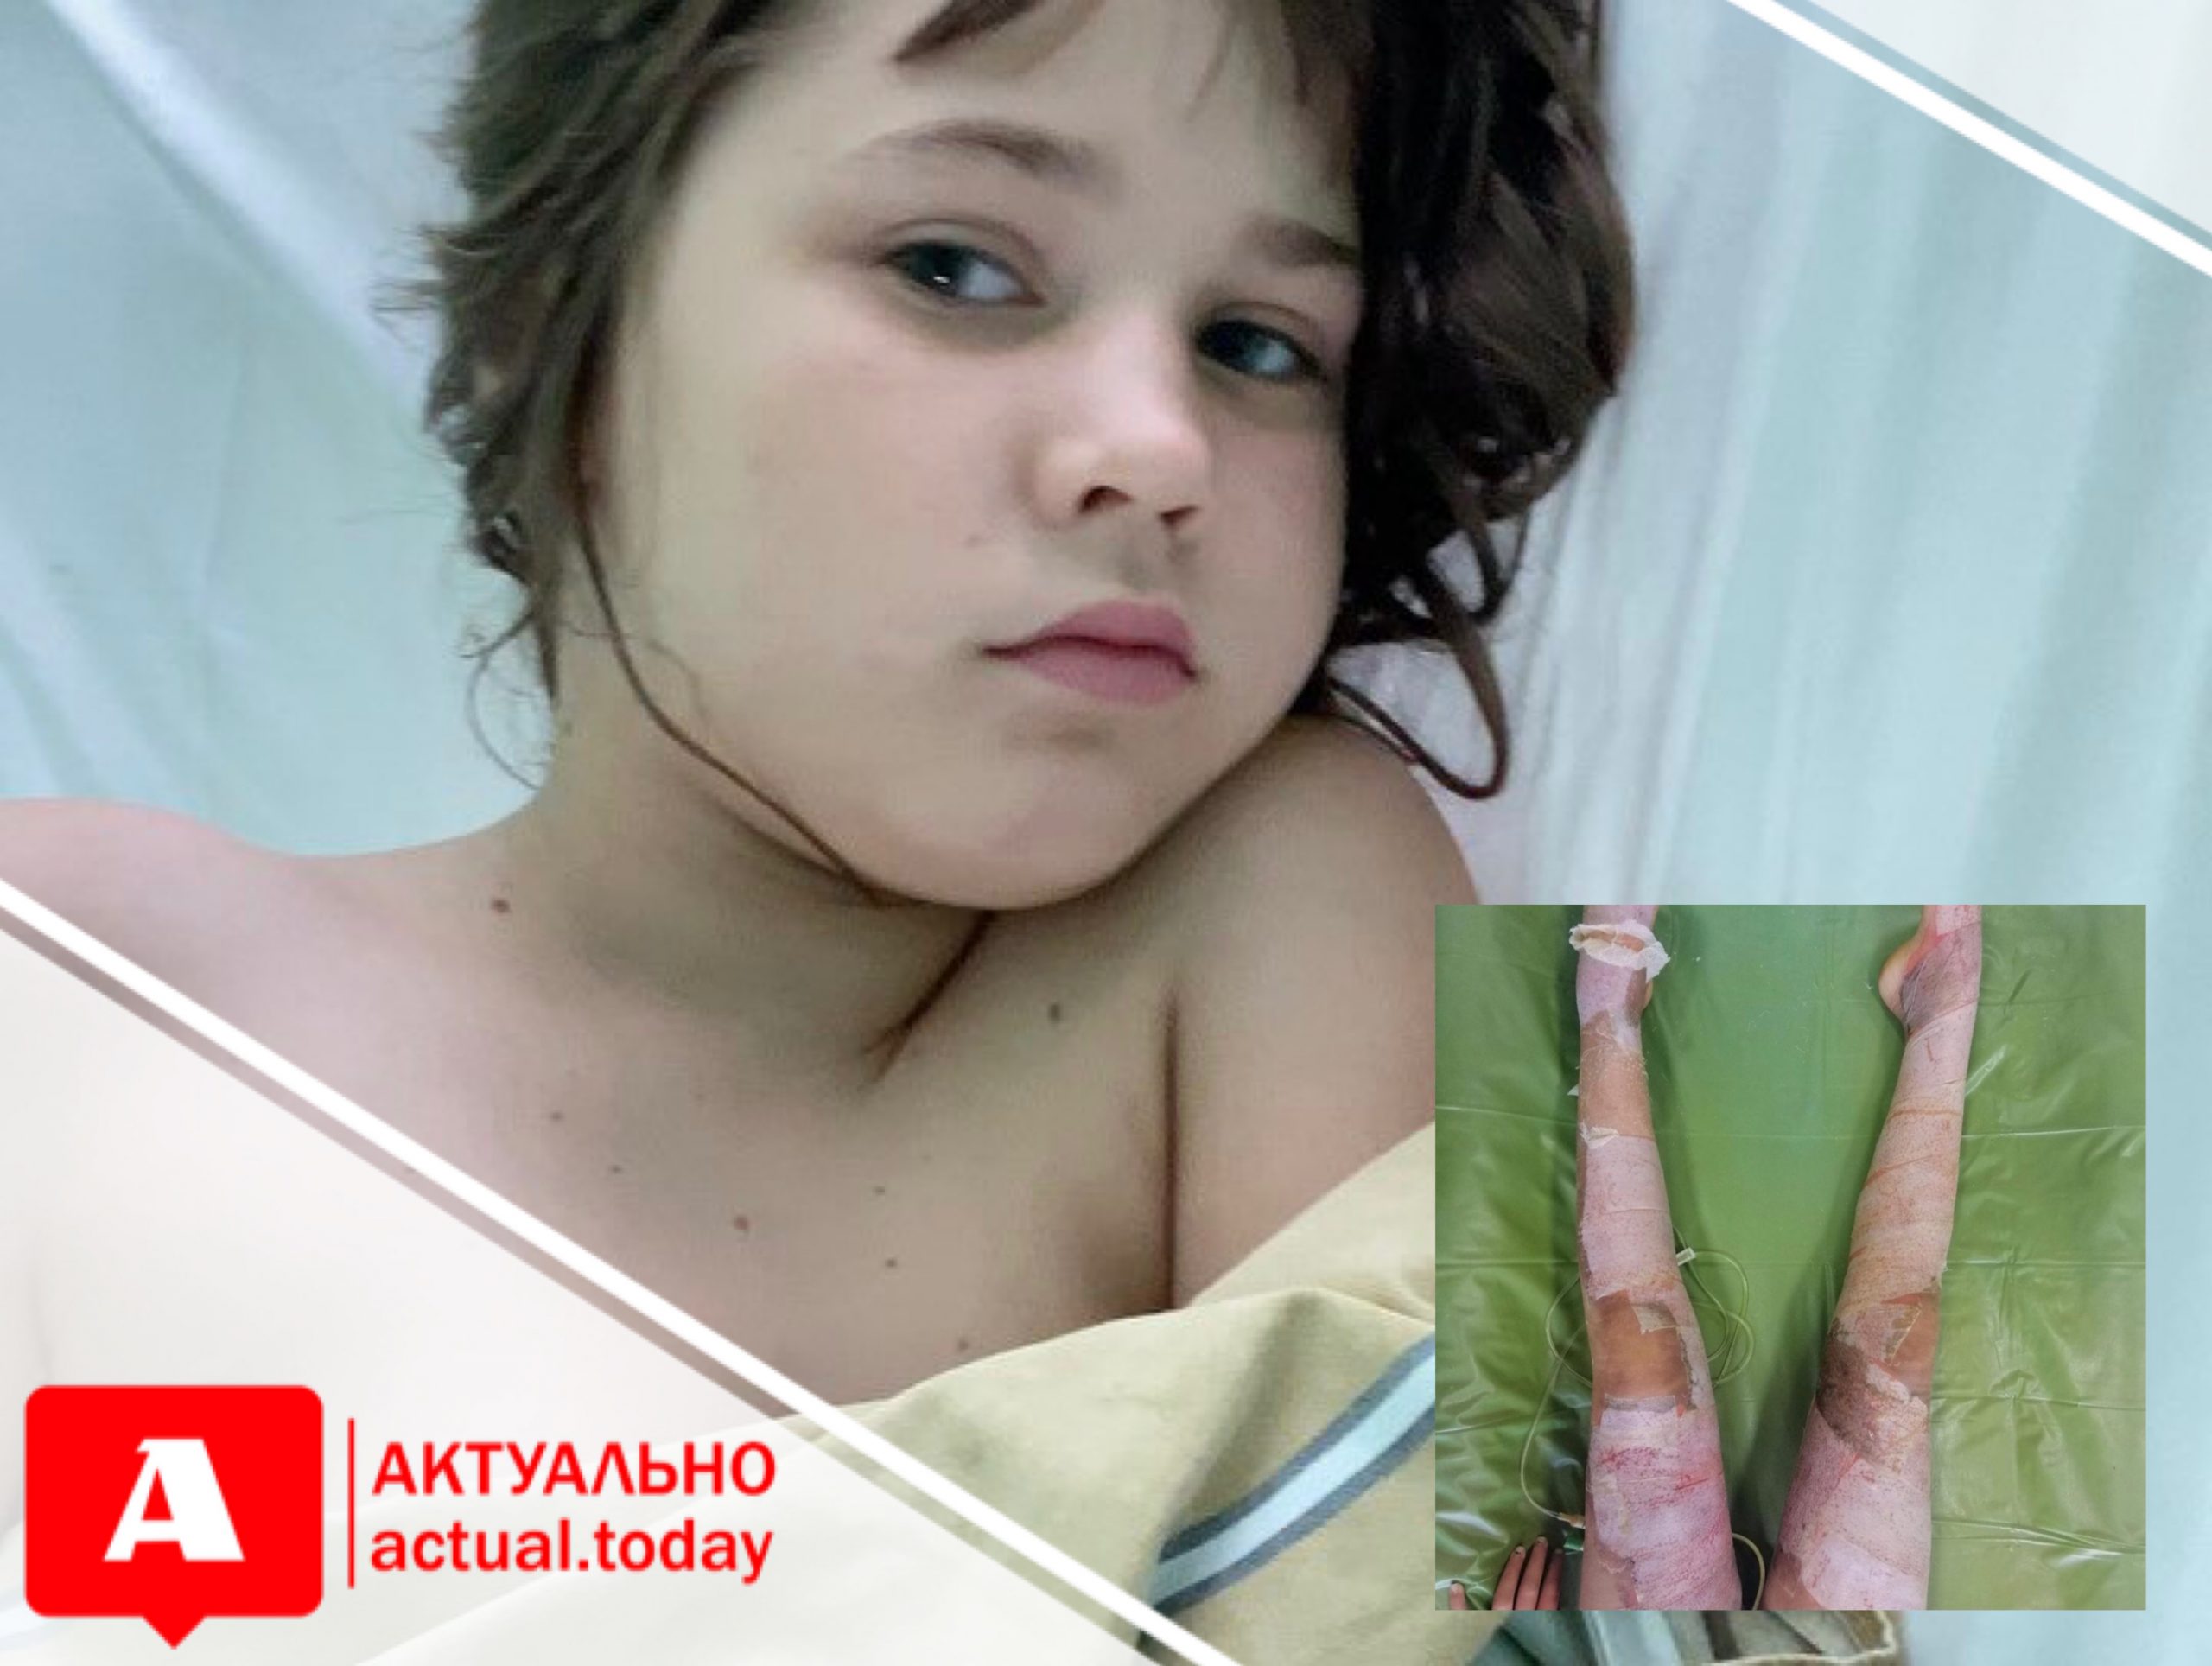 Запорожцев просят помочь 11-летней девочке, которая получила серьёзные ожоги, помогая маме с консервацией (ФОТО)